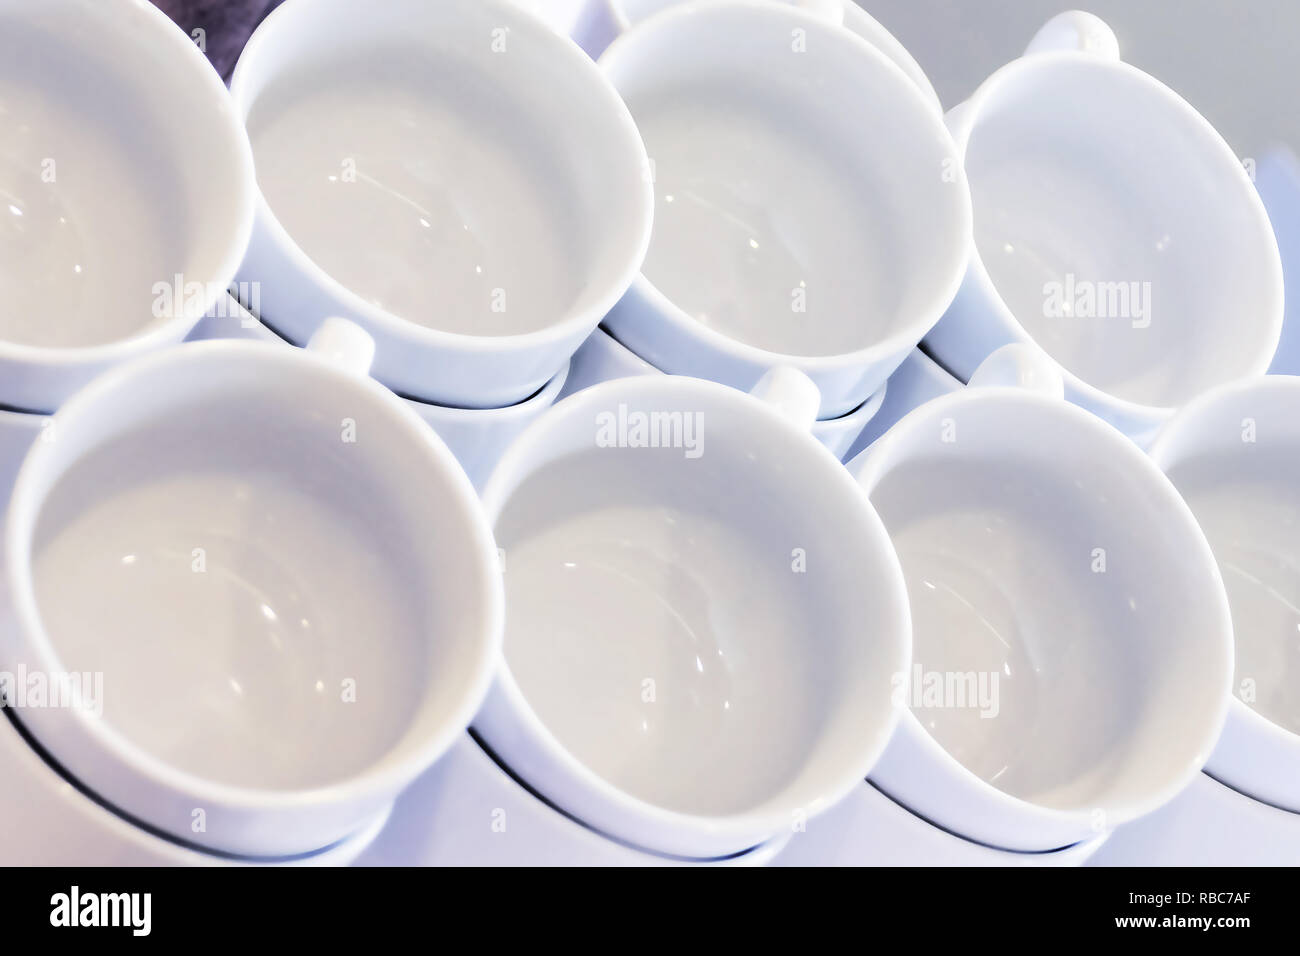 Leere weiße Tassen gestapelt auf dem Tisch. Tee oder Kaffee Catering Services im Hotel, Event, Konferenz, Tagung oder Hochzeit. Ansicht von oben. Stockfoto